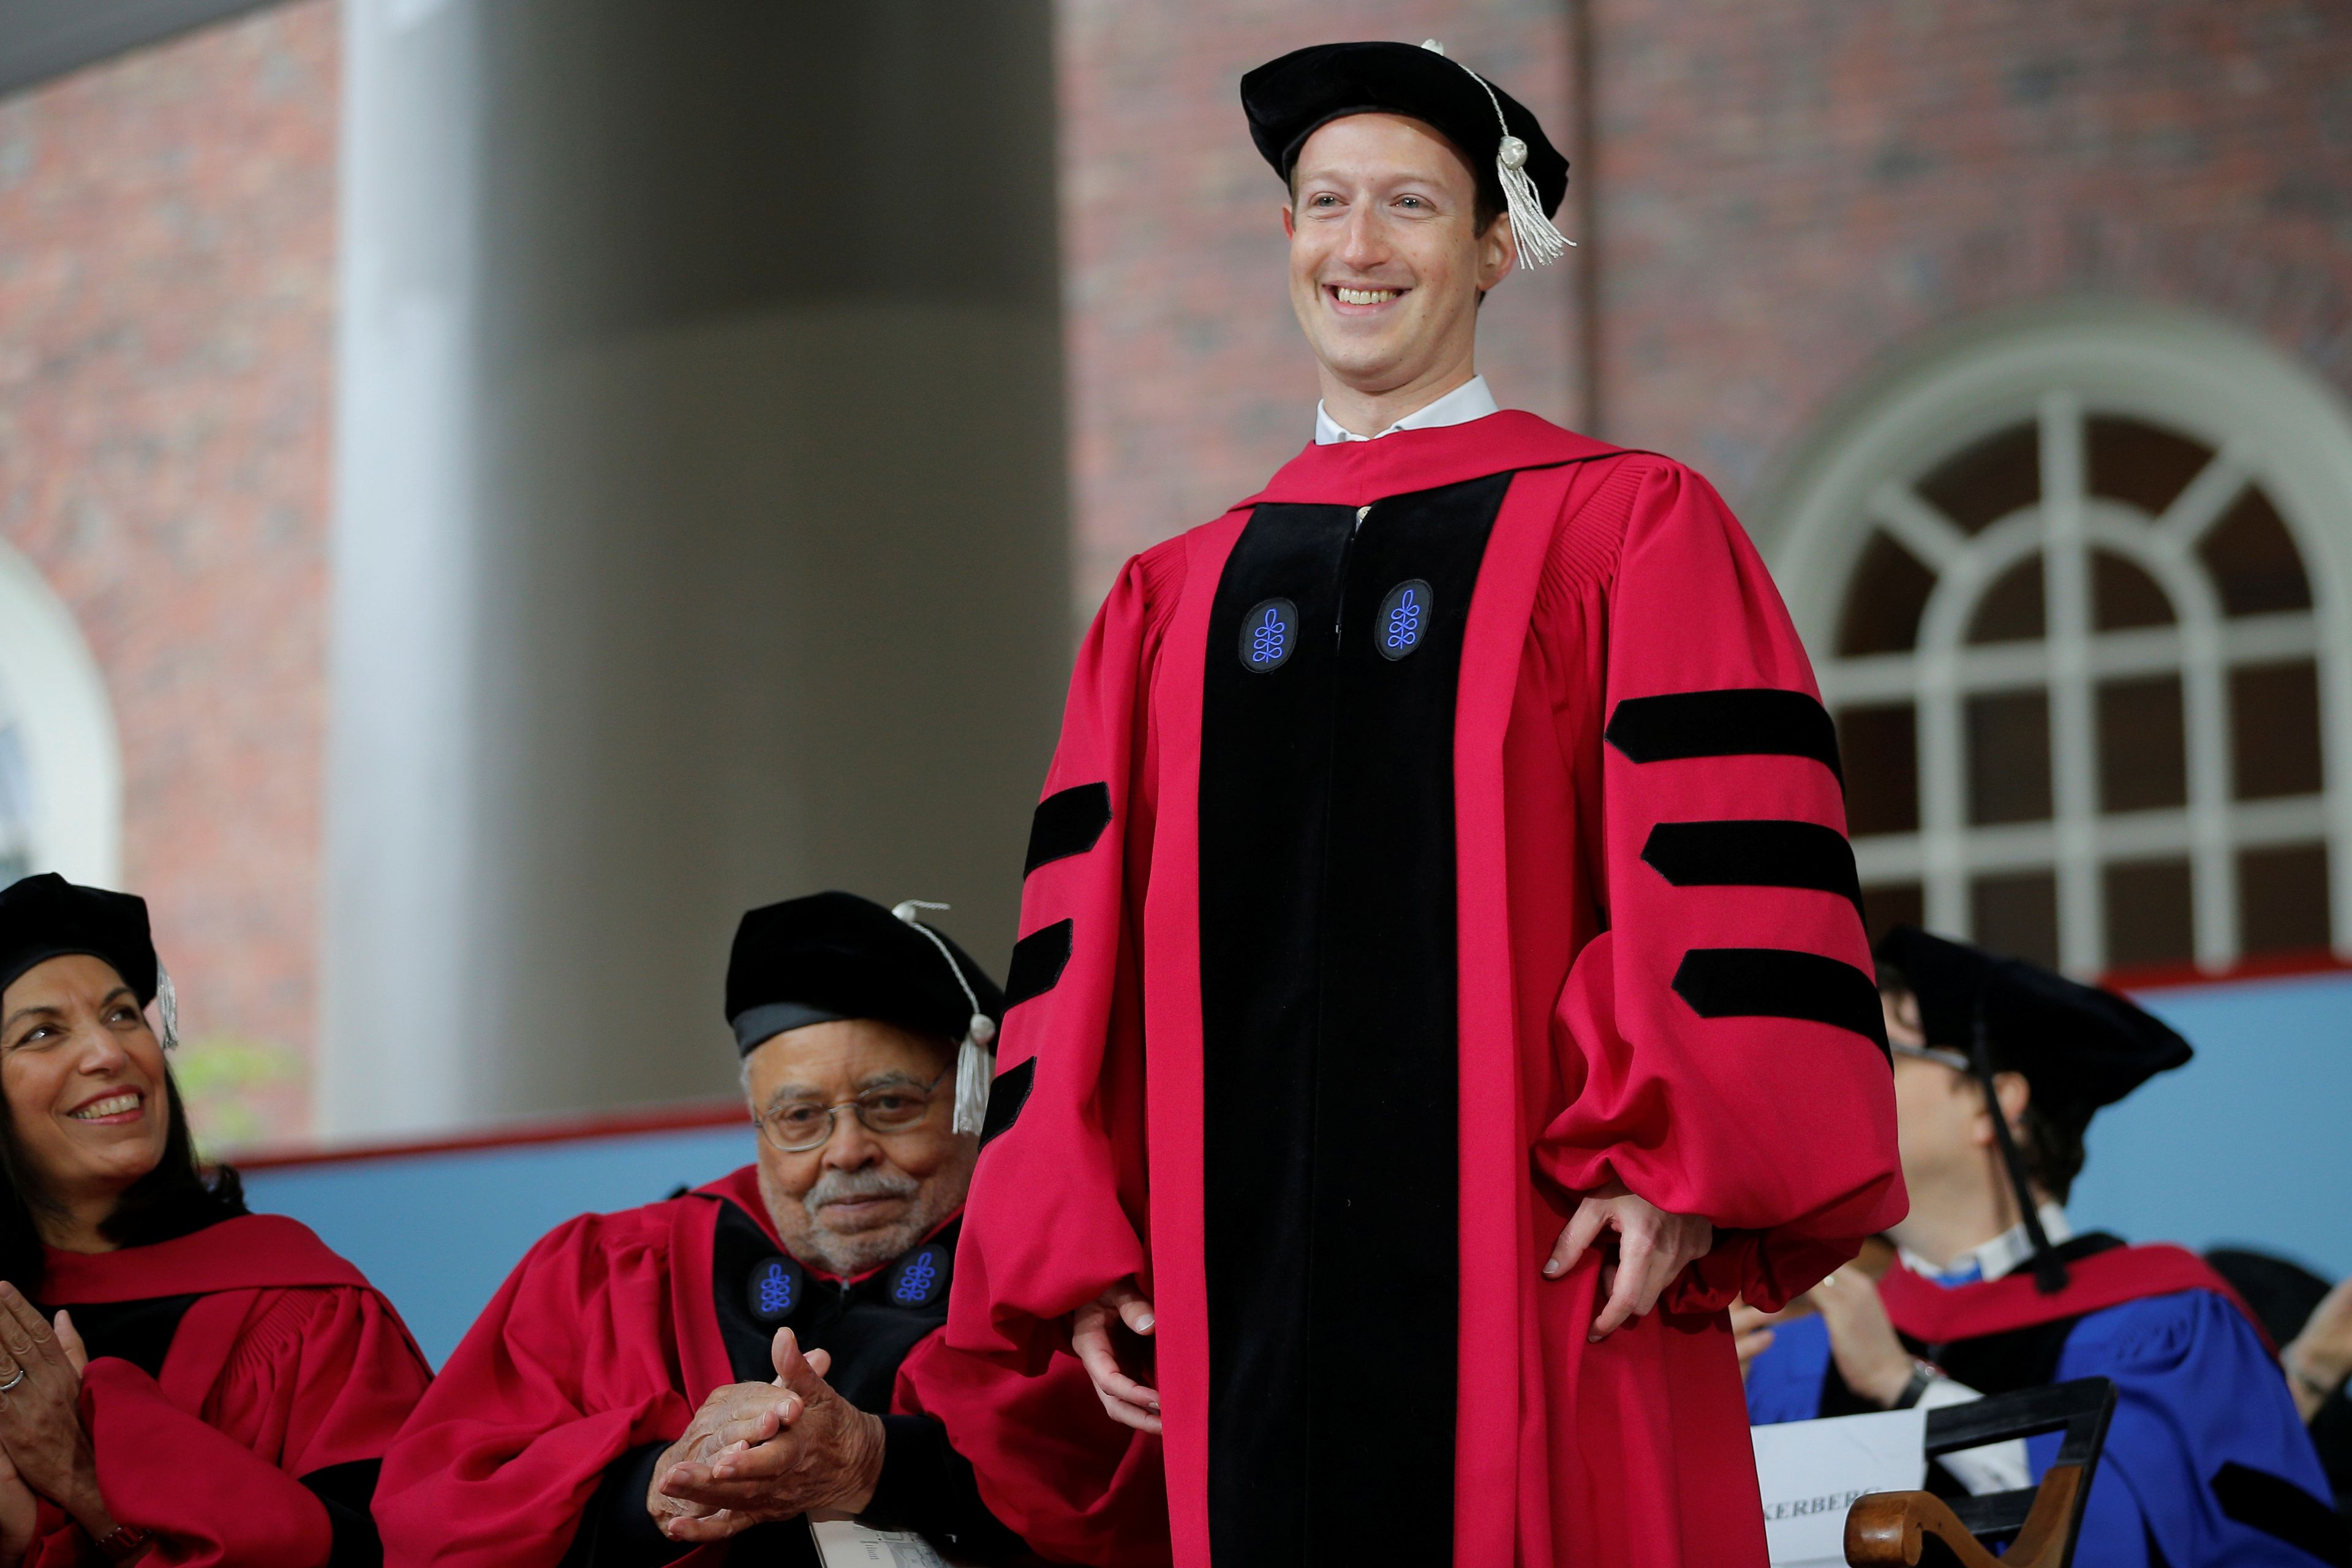 El fundador de Facebook, Mark Zuckerberg, recibe el título honorífico de Doctor en Derecho durante los 366º Commencement Exercises de la Universidad de Harvard en Cambridge en 2017.